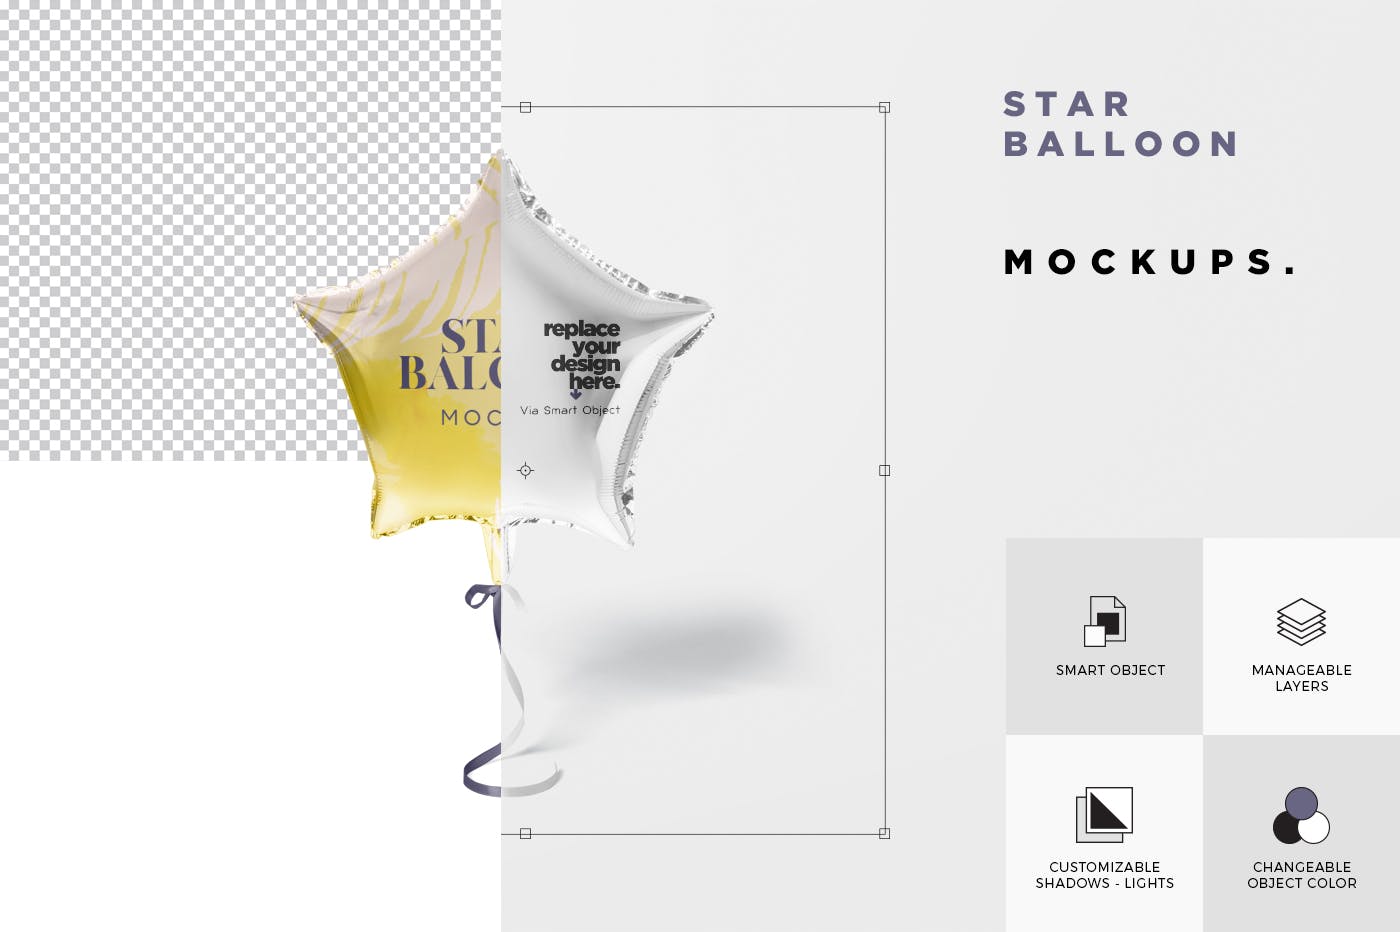 气球星星装饰物图案设计样机第一素材精选模板 Star Balloon Mockup插图(5)